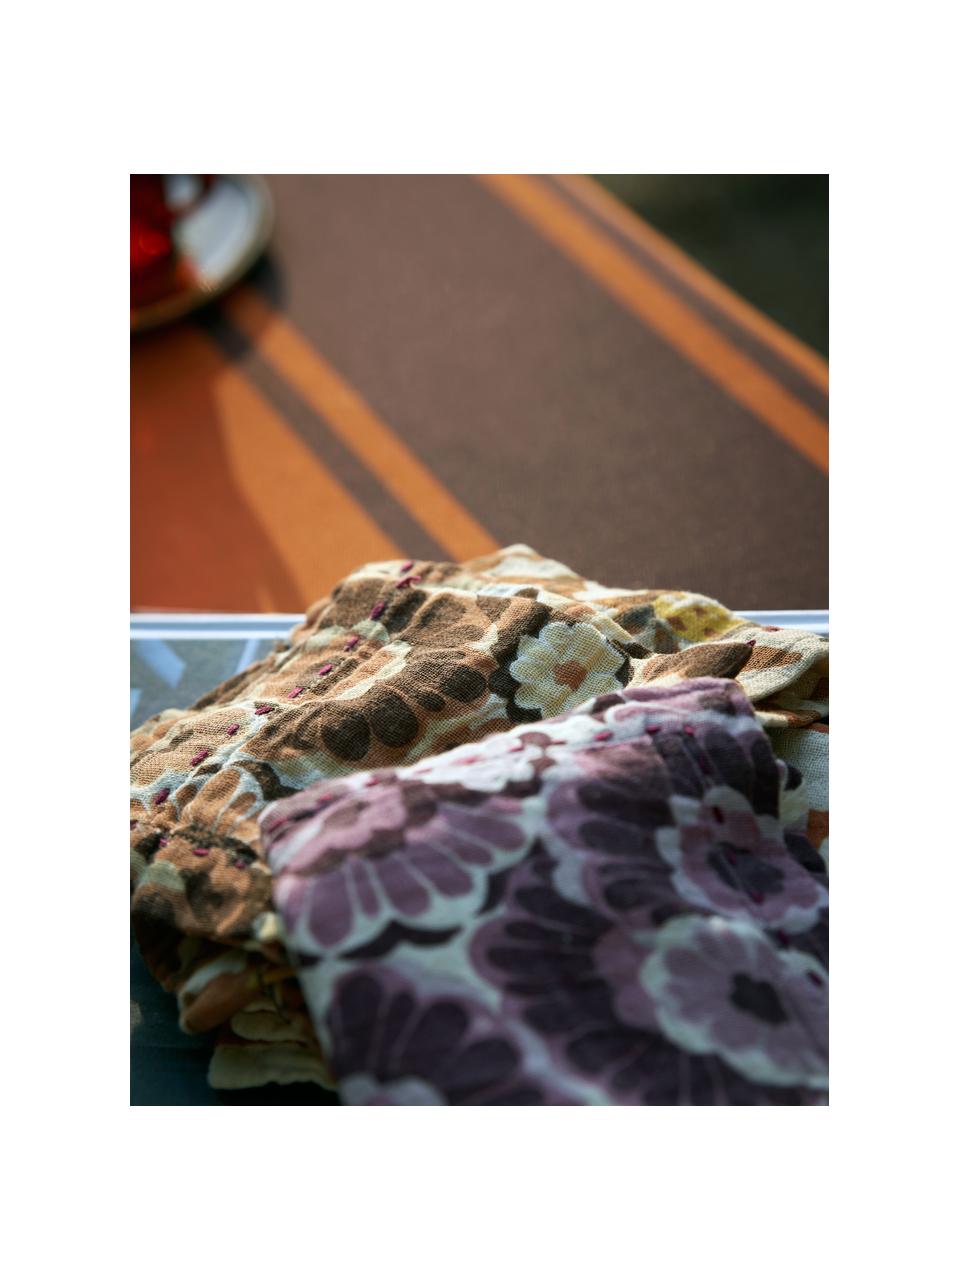 Serviettes de table Floral, 2 pièces, 100 % coton, Brun, orangé, blanc, larg. 30 x long. 30 cm